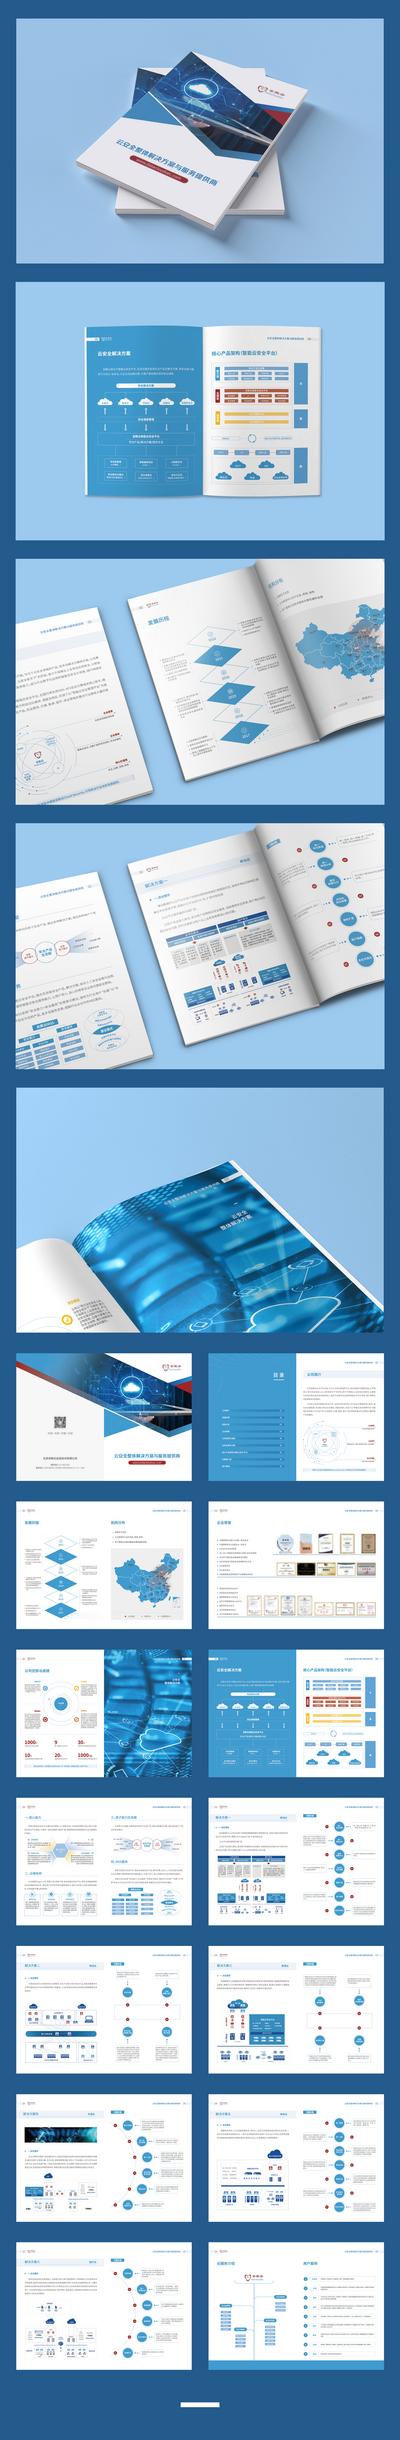 南门网 画册 宣传册 企业 科技 大数据 云计算 图表 版式 大气 简约 蓝色